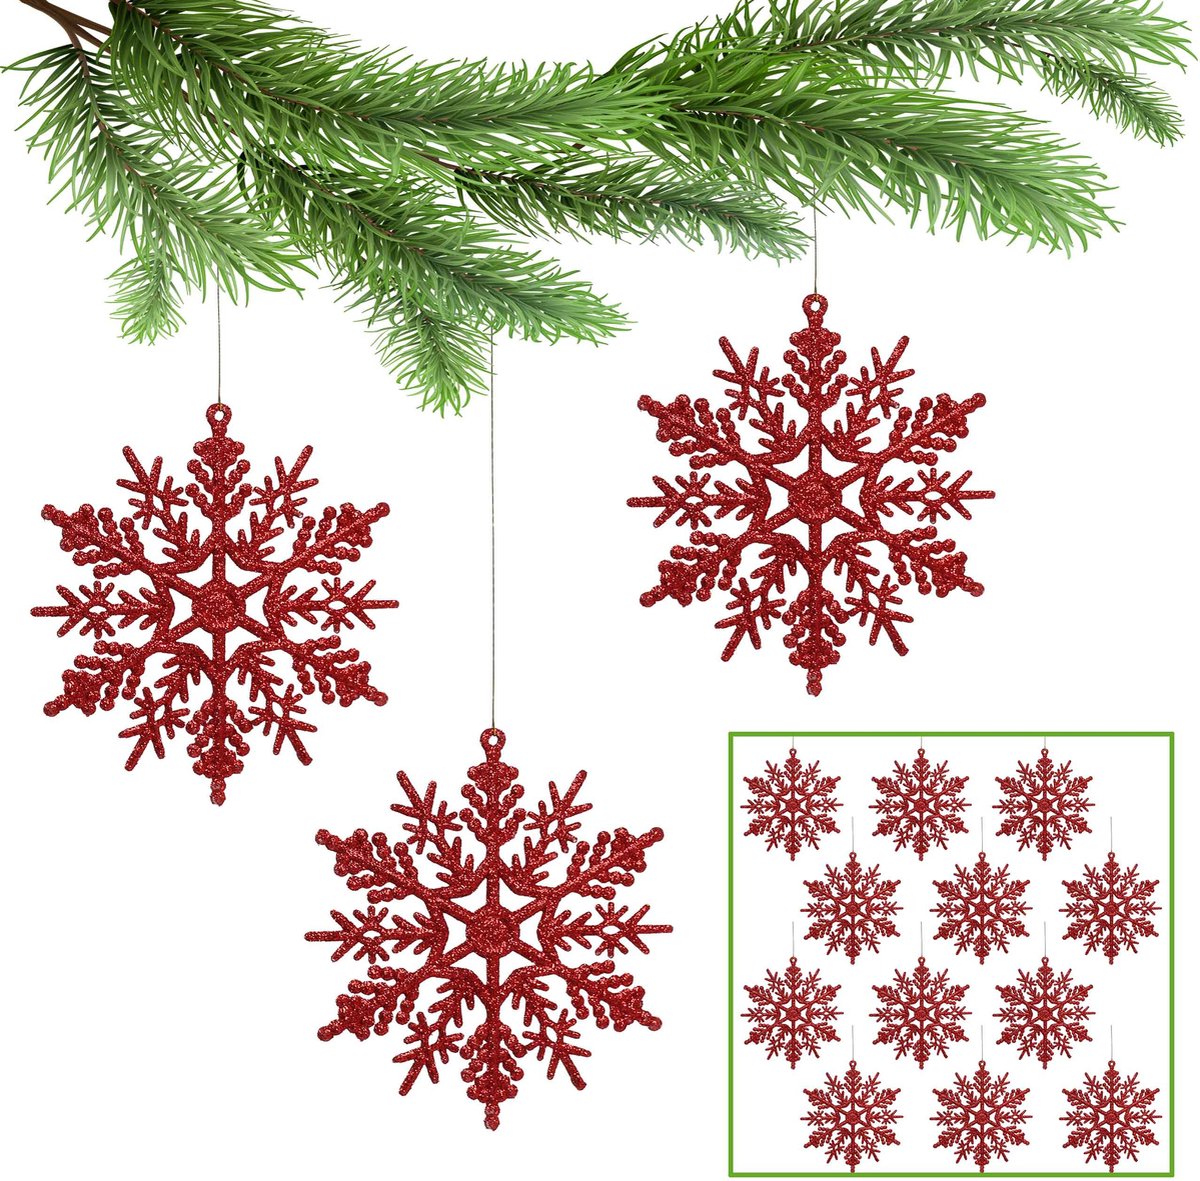 Rode sterren, sneeuwvlokken voor de kerstboom, kerstboomversiering 10 cm, 12 st.